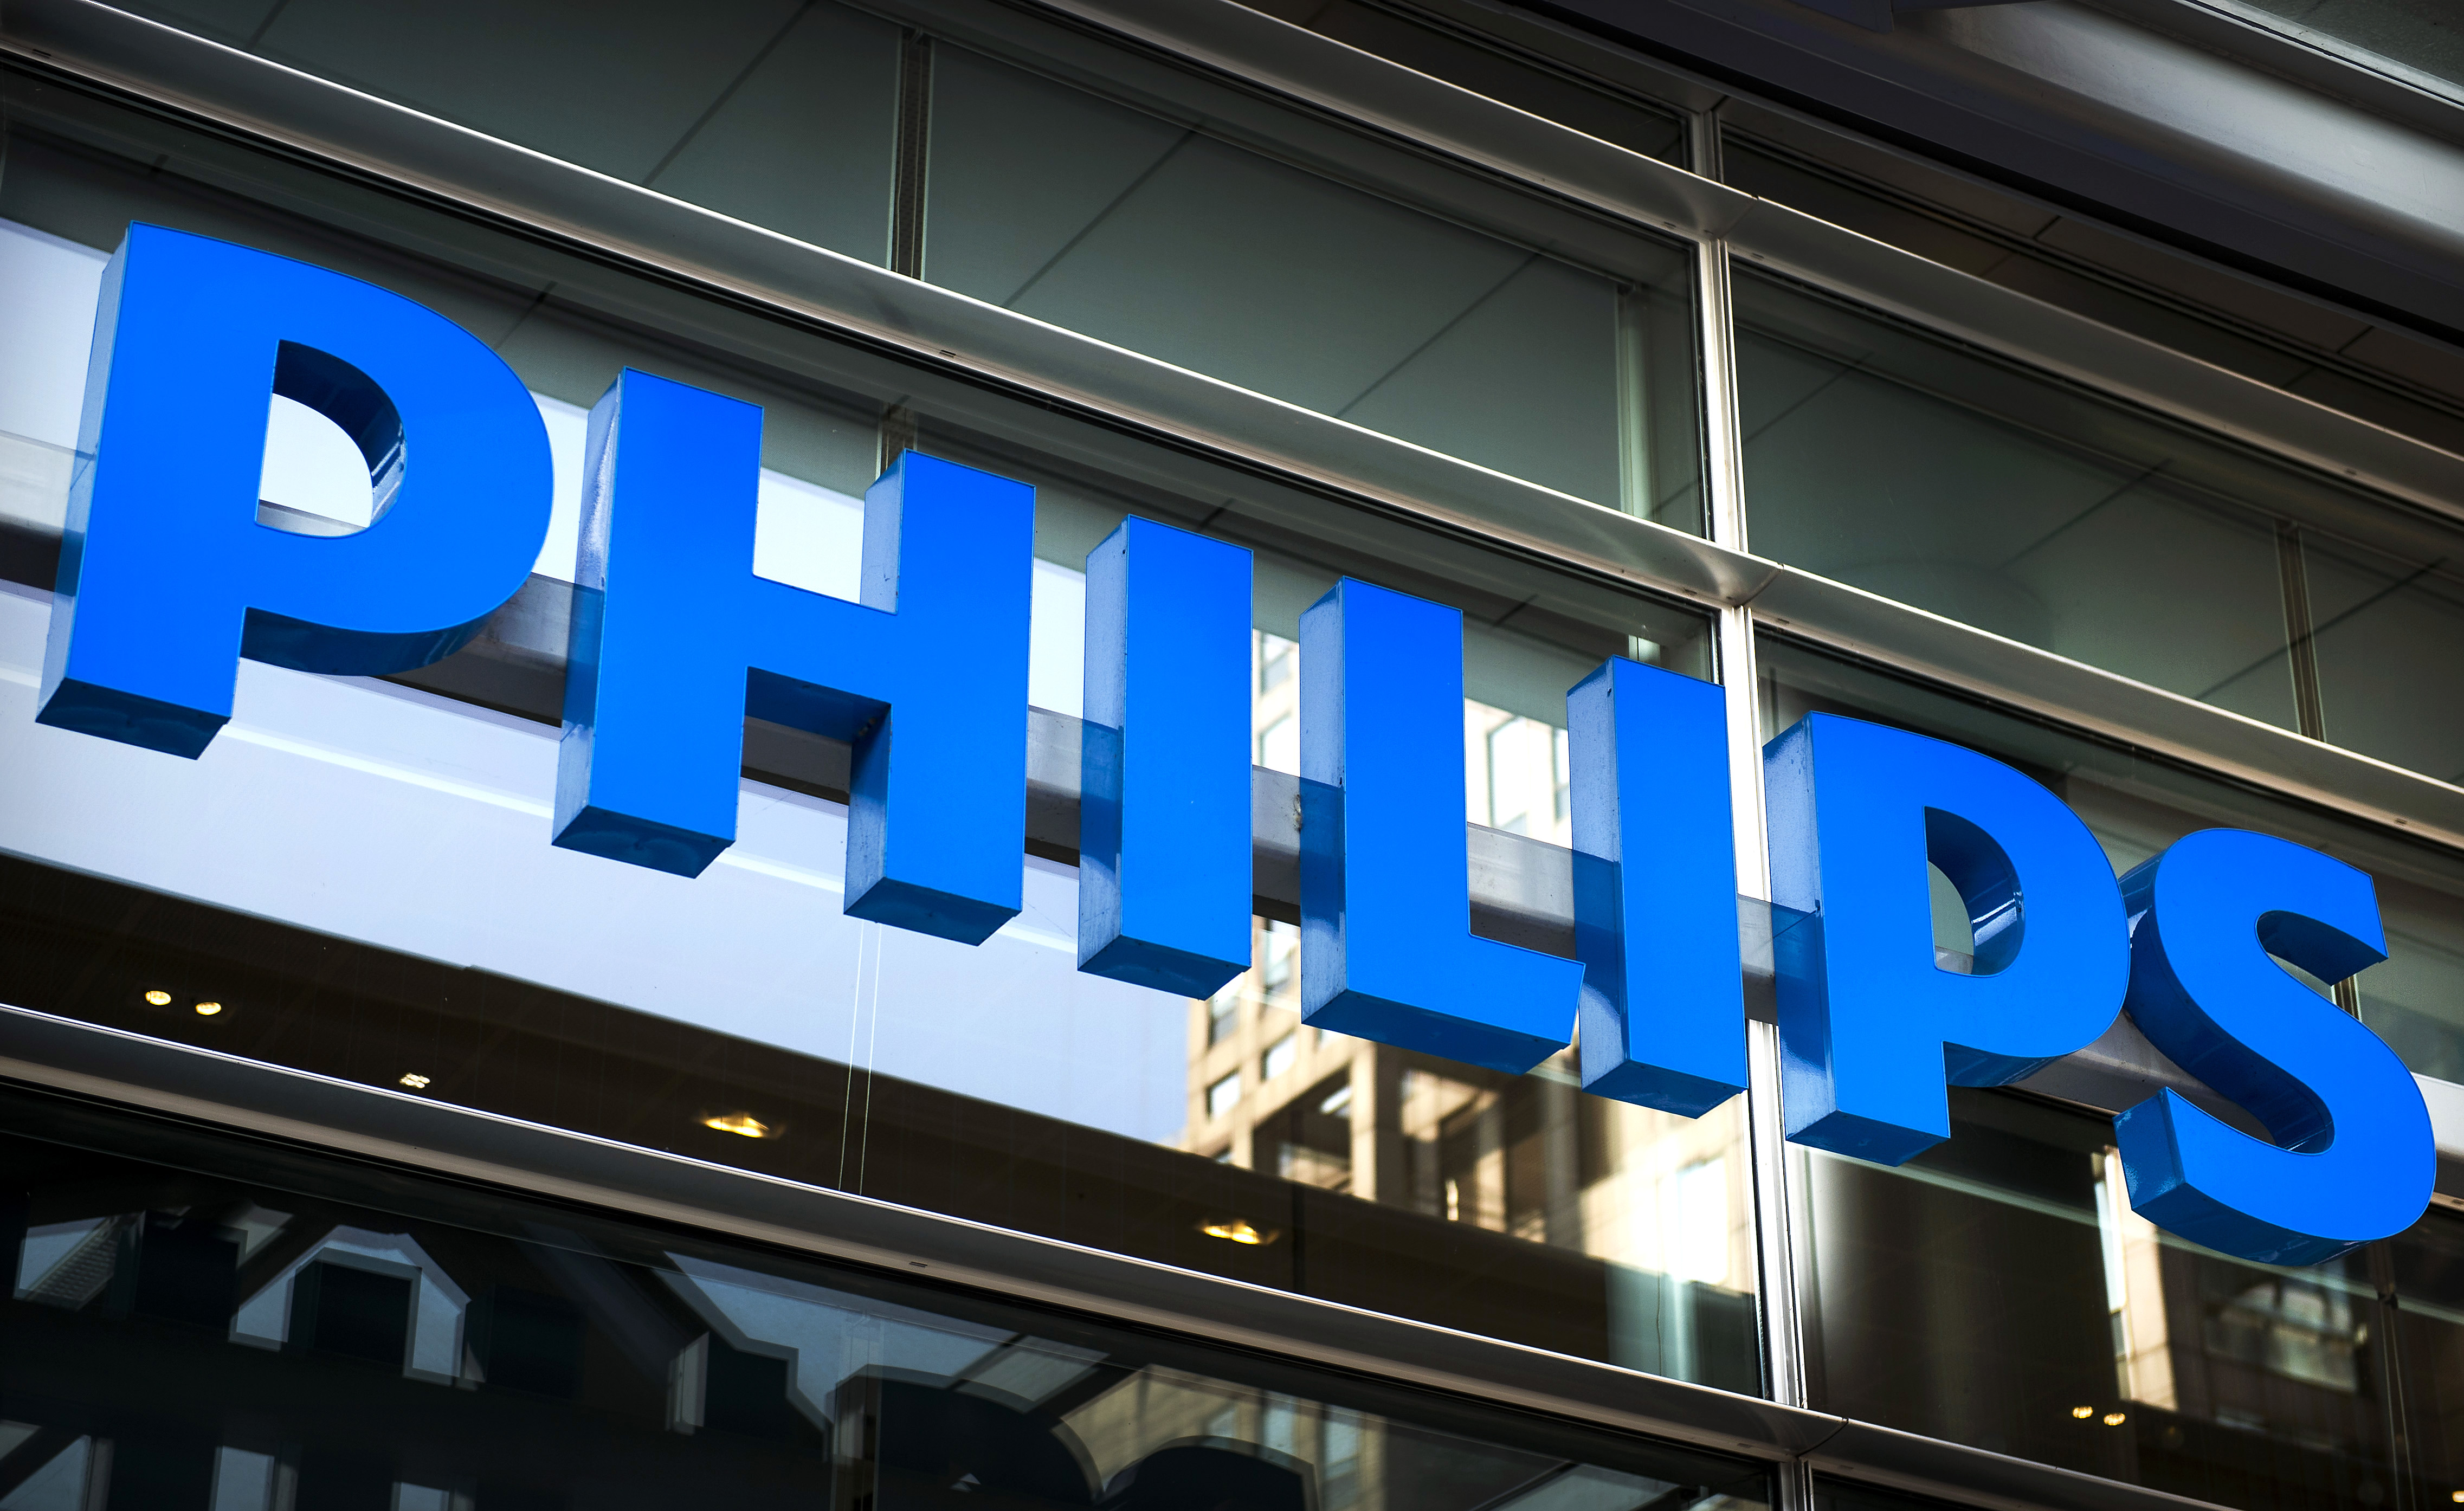 2014-09-23 10:03:29 AMSTERDAM - Logo van Philips op het hoofdkantoor in Amsterdam. Philips voegt de divisies Healthcare en Consumer Lifestyle samen onder de noemer HealthTech en verzelfstandigt de lichtdivisie. ANP REMKO DE WAAL